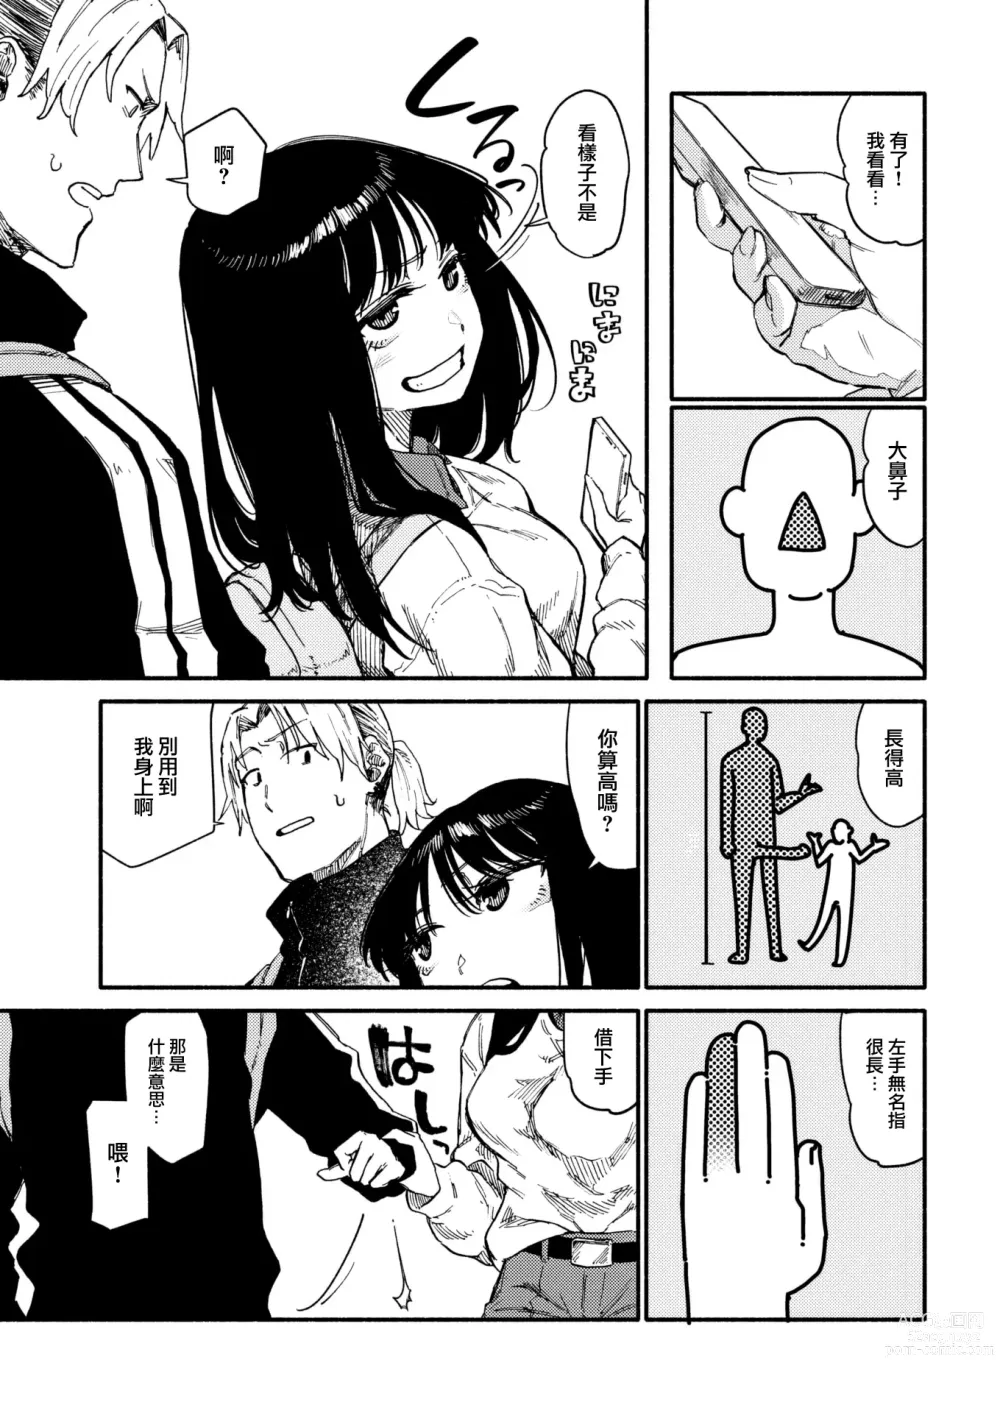 Page 6 of manga Zokusetsu desu ga....